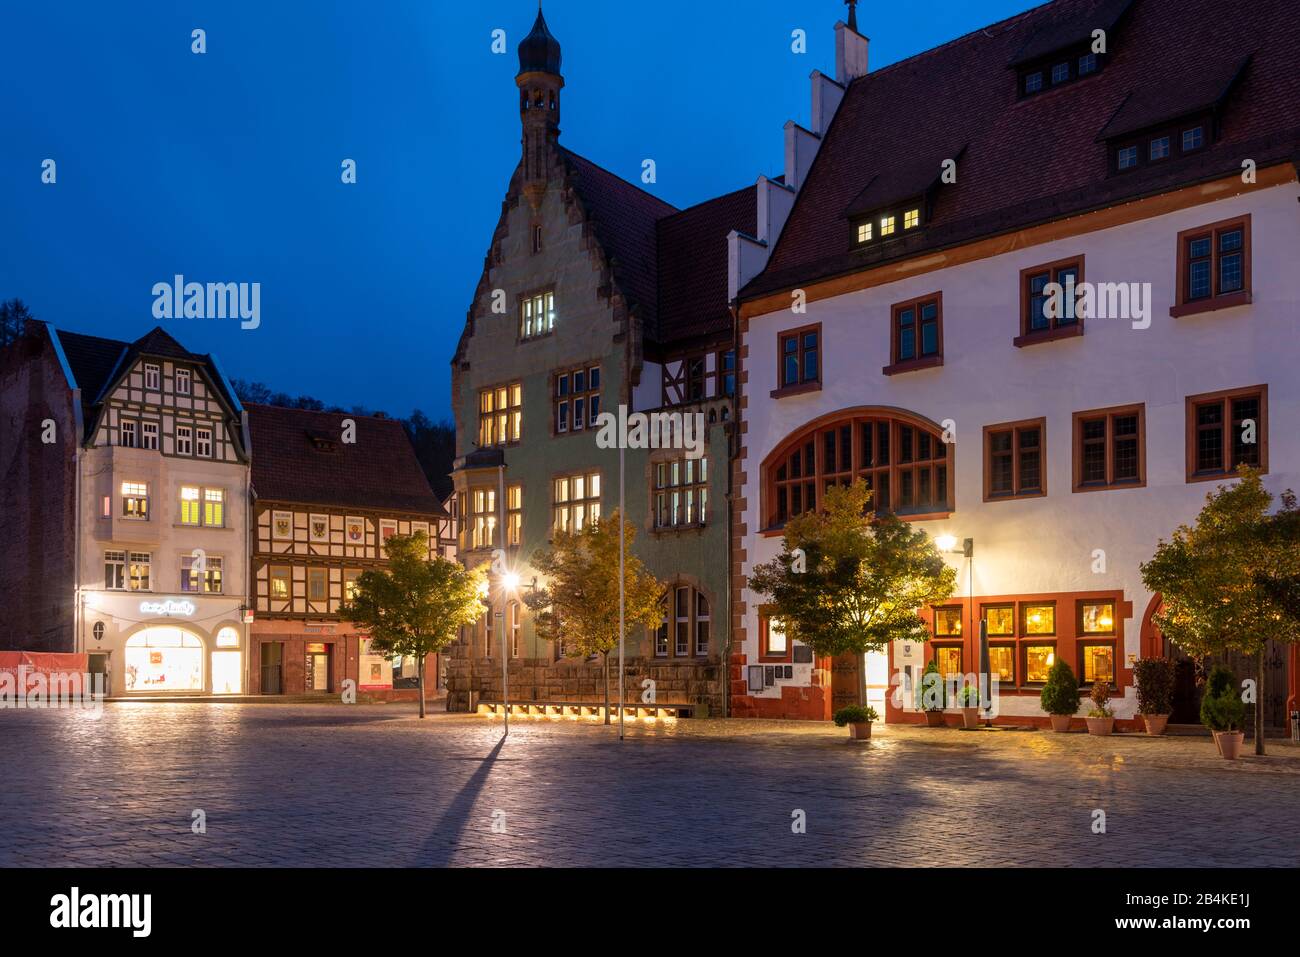 Deutschland, Thüringen, Schmalkalden, Altstadt, Altmark, Rathaus, Fachwerkhäuser, Geschäfte. Stock Photo